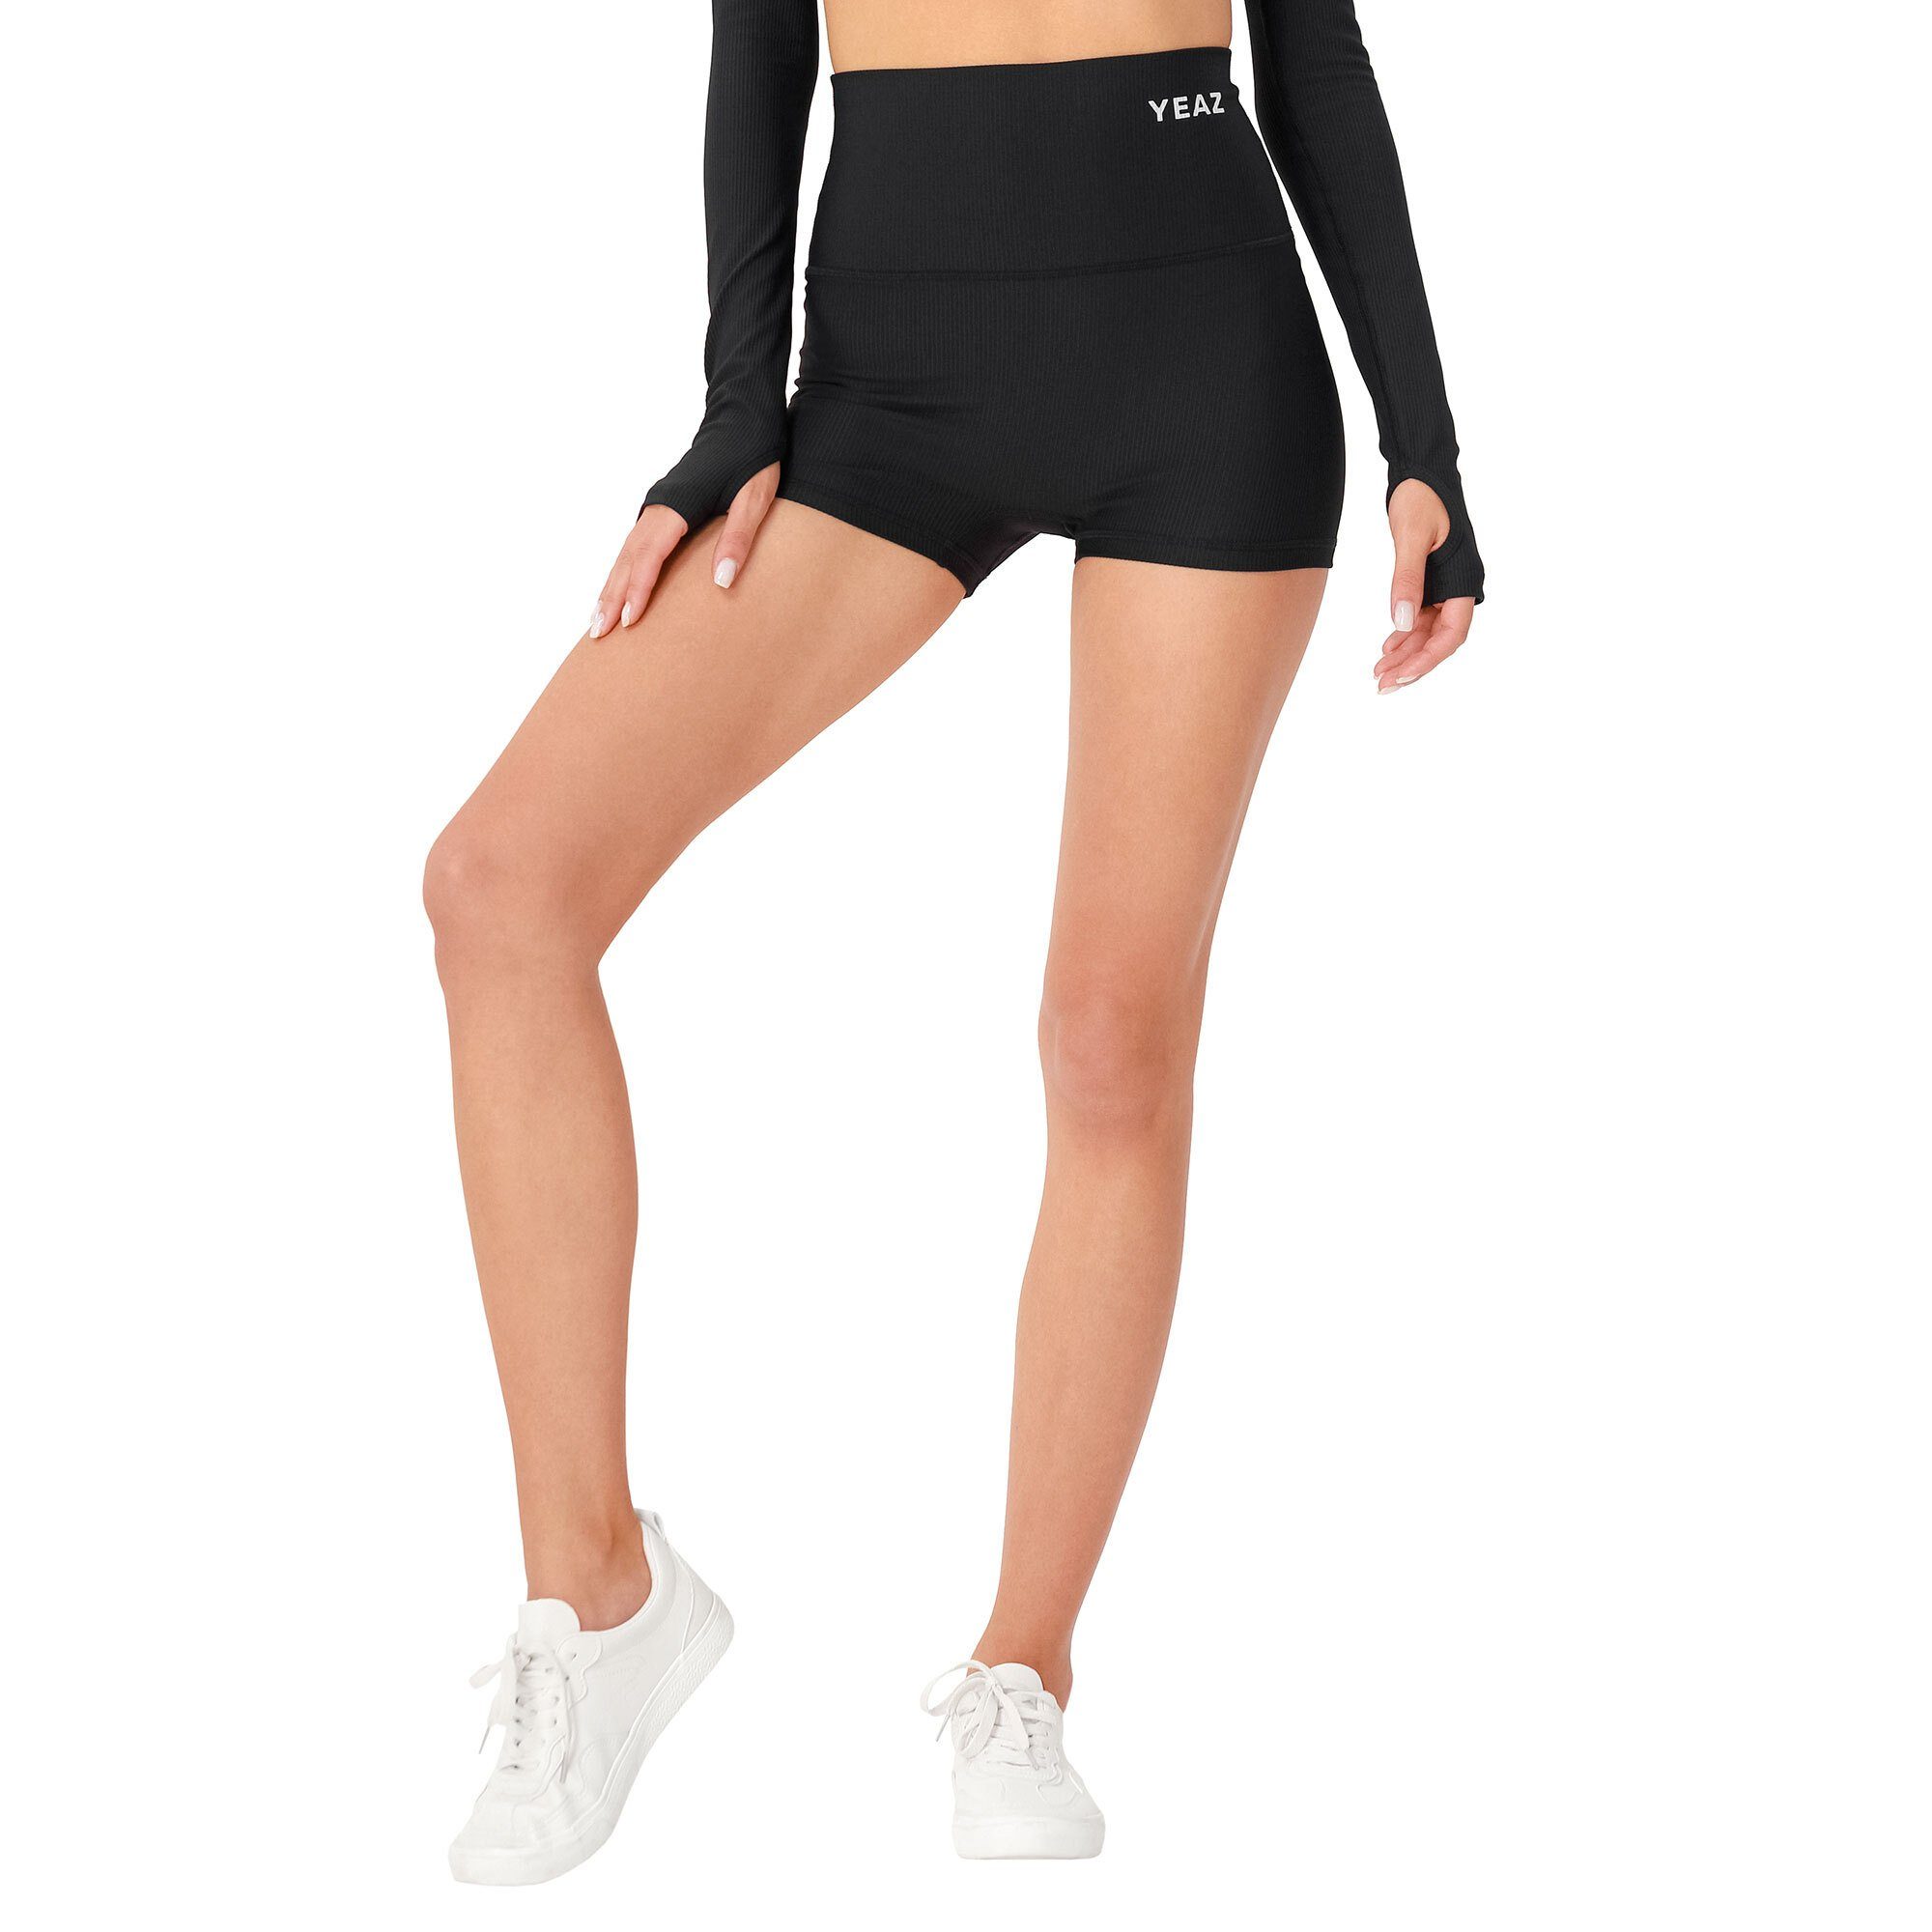 CLUB shorts (2-tlg) LEVEL YEAZ schwarz Yogashorts